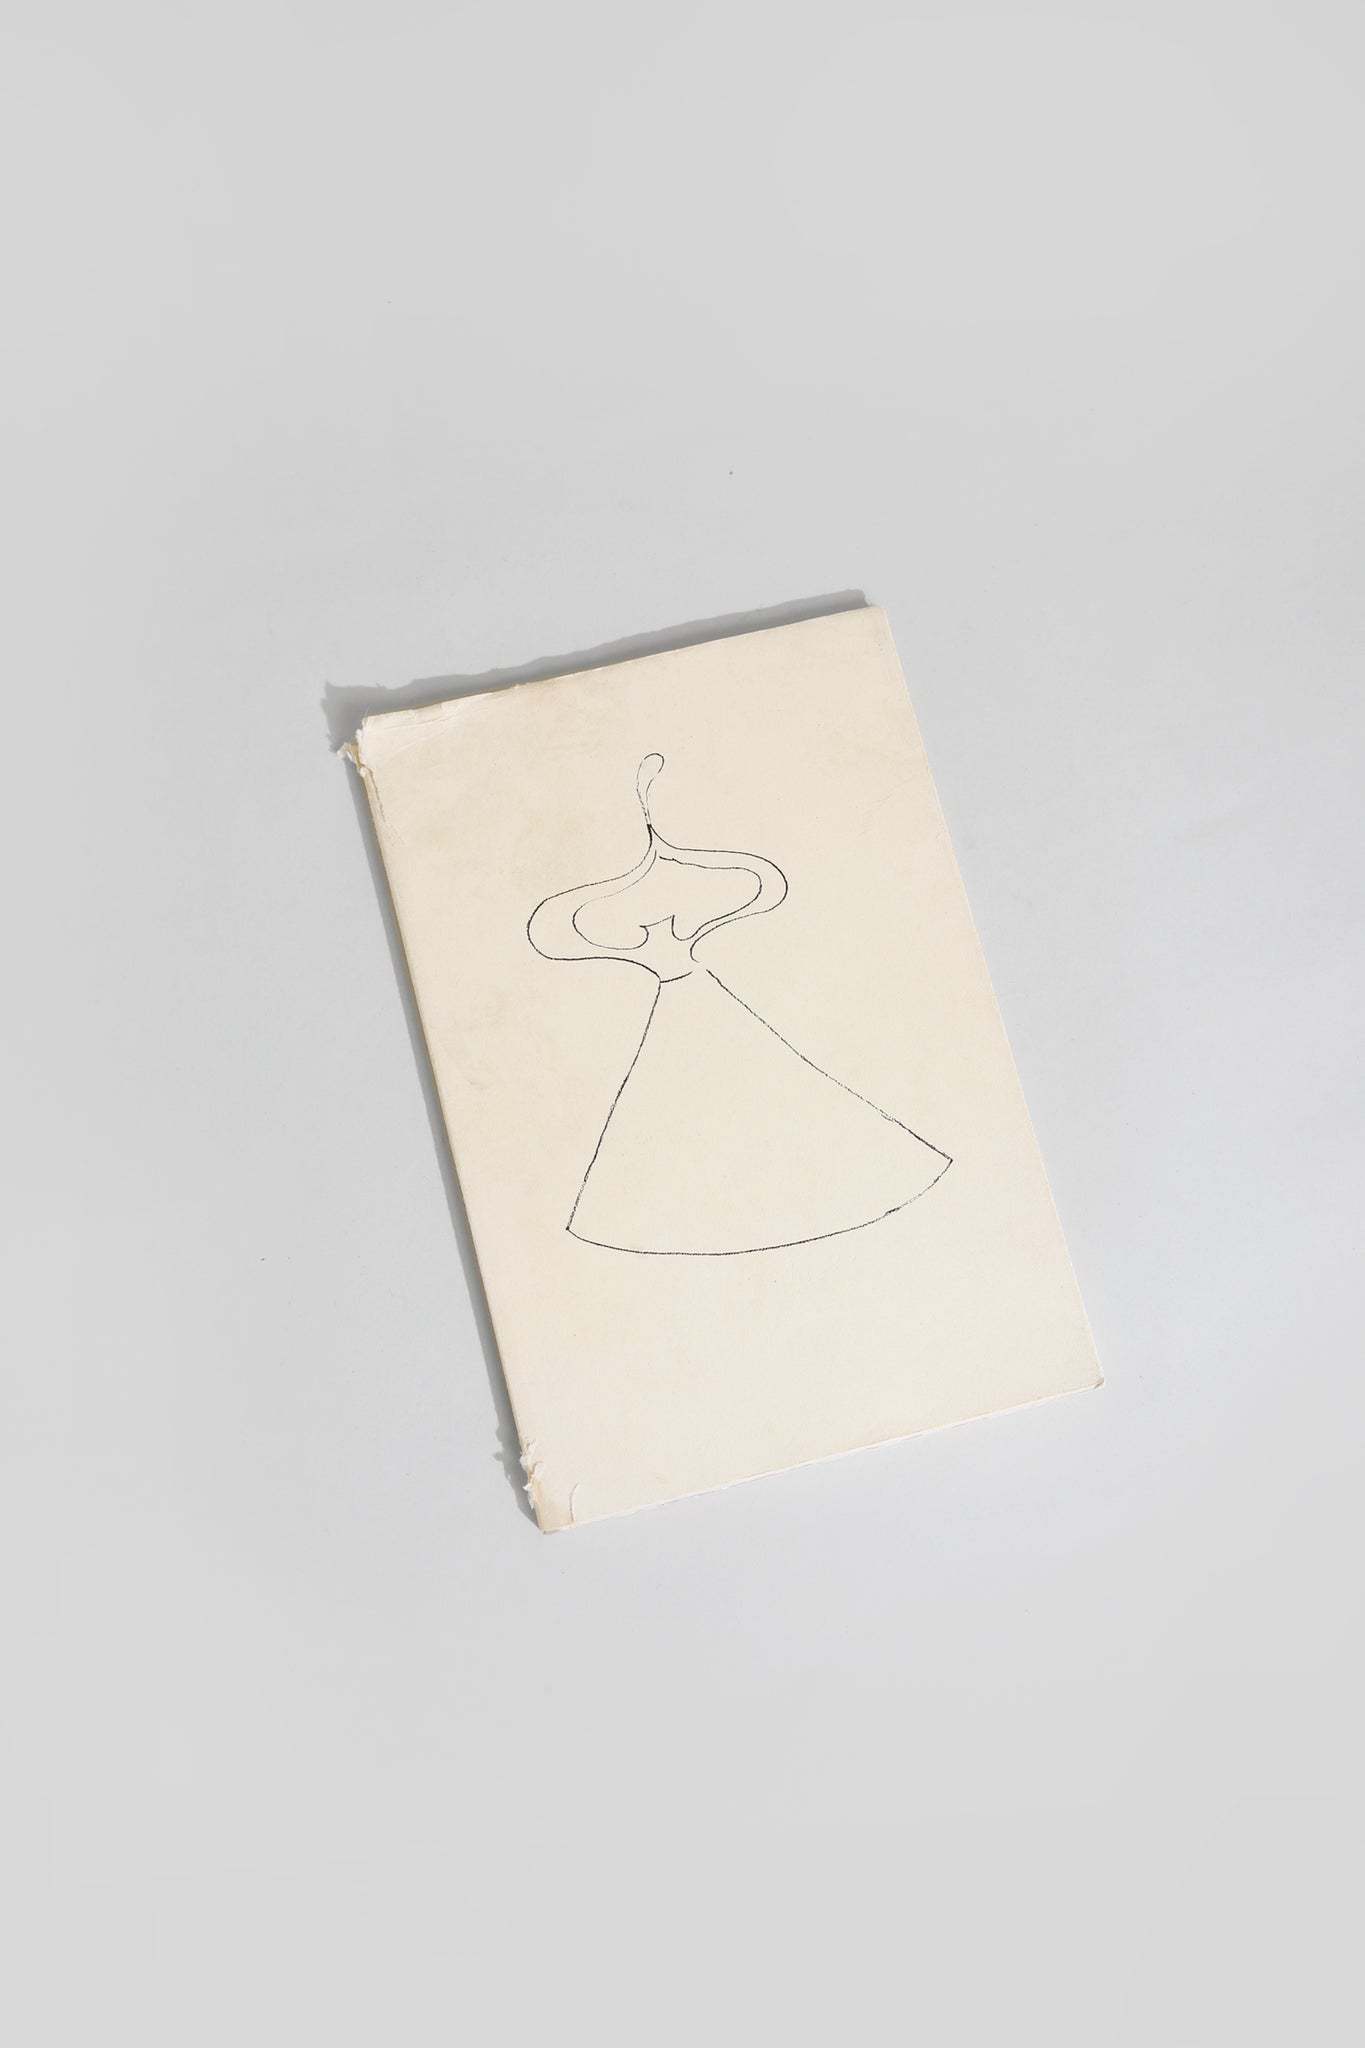 Drawings by Miró Book